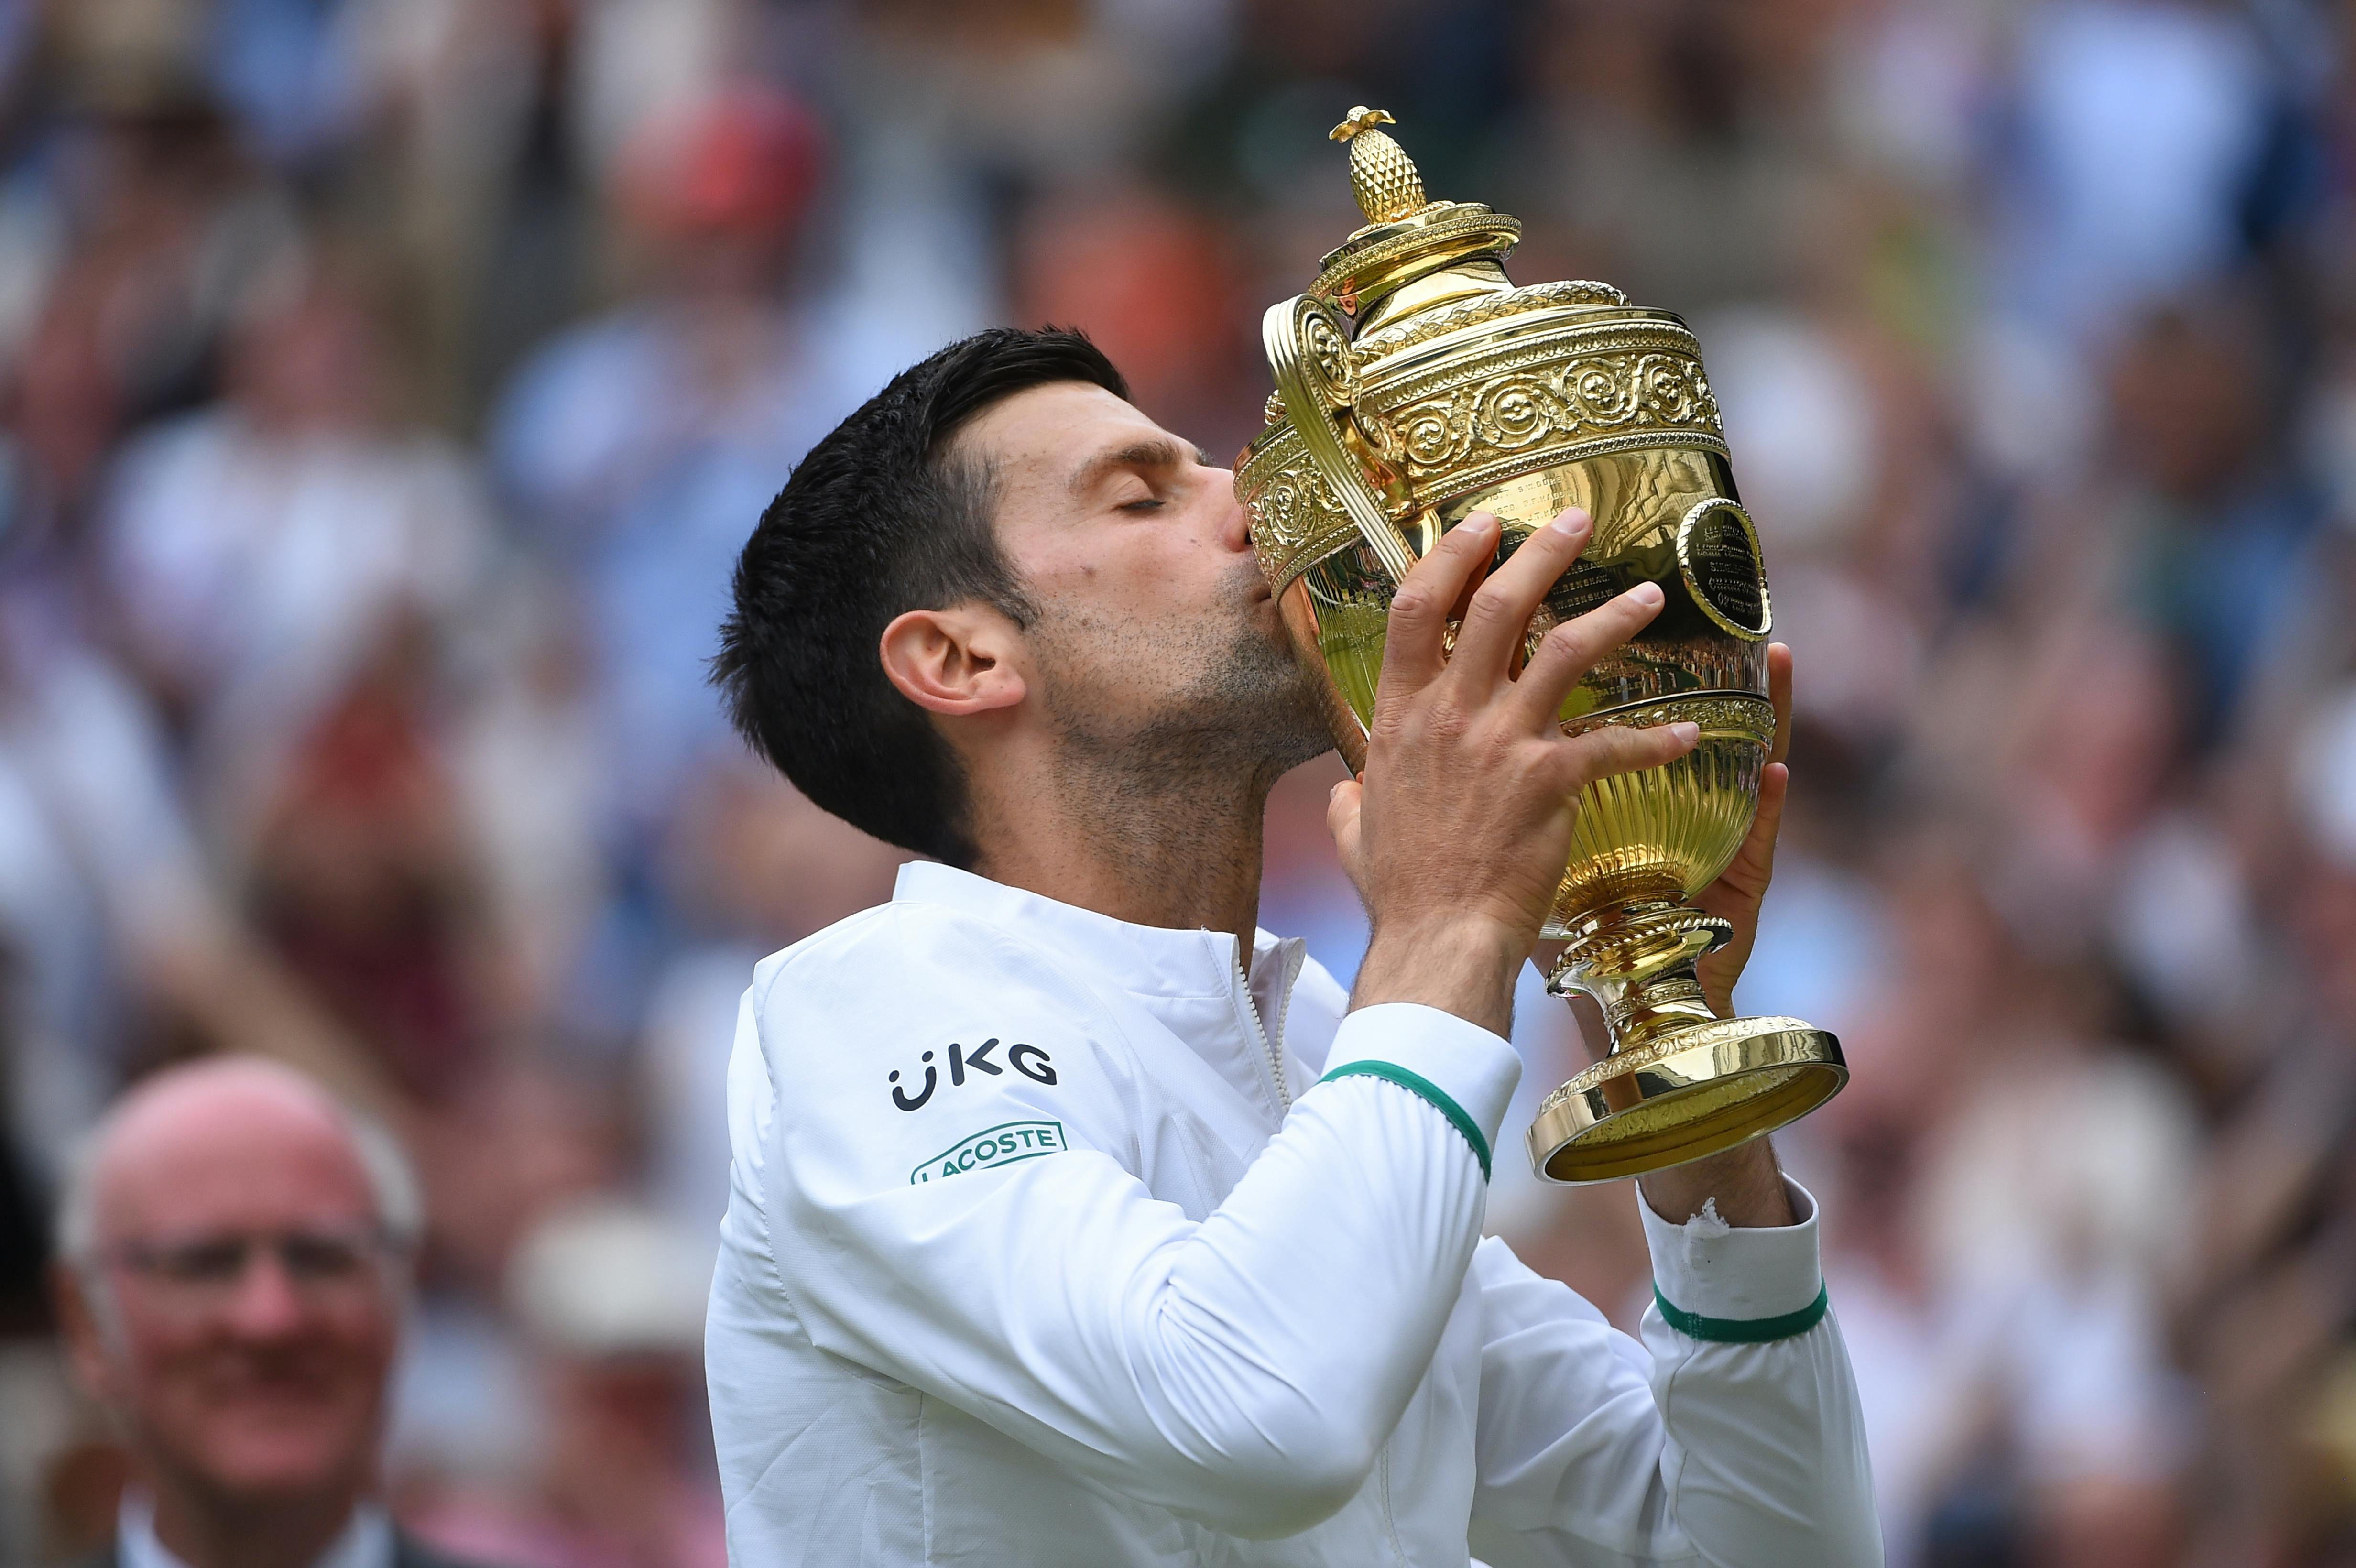 Novak Djokovic Wimbledon 2021 winner